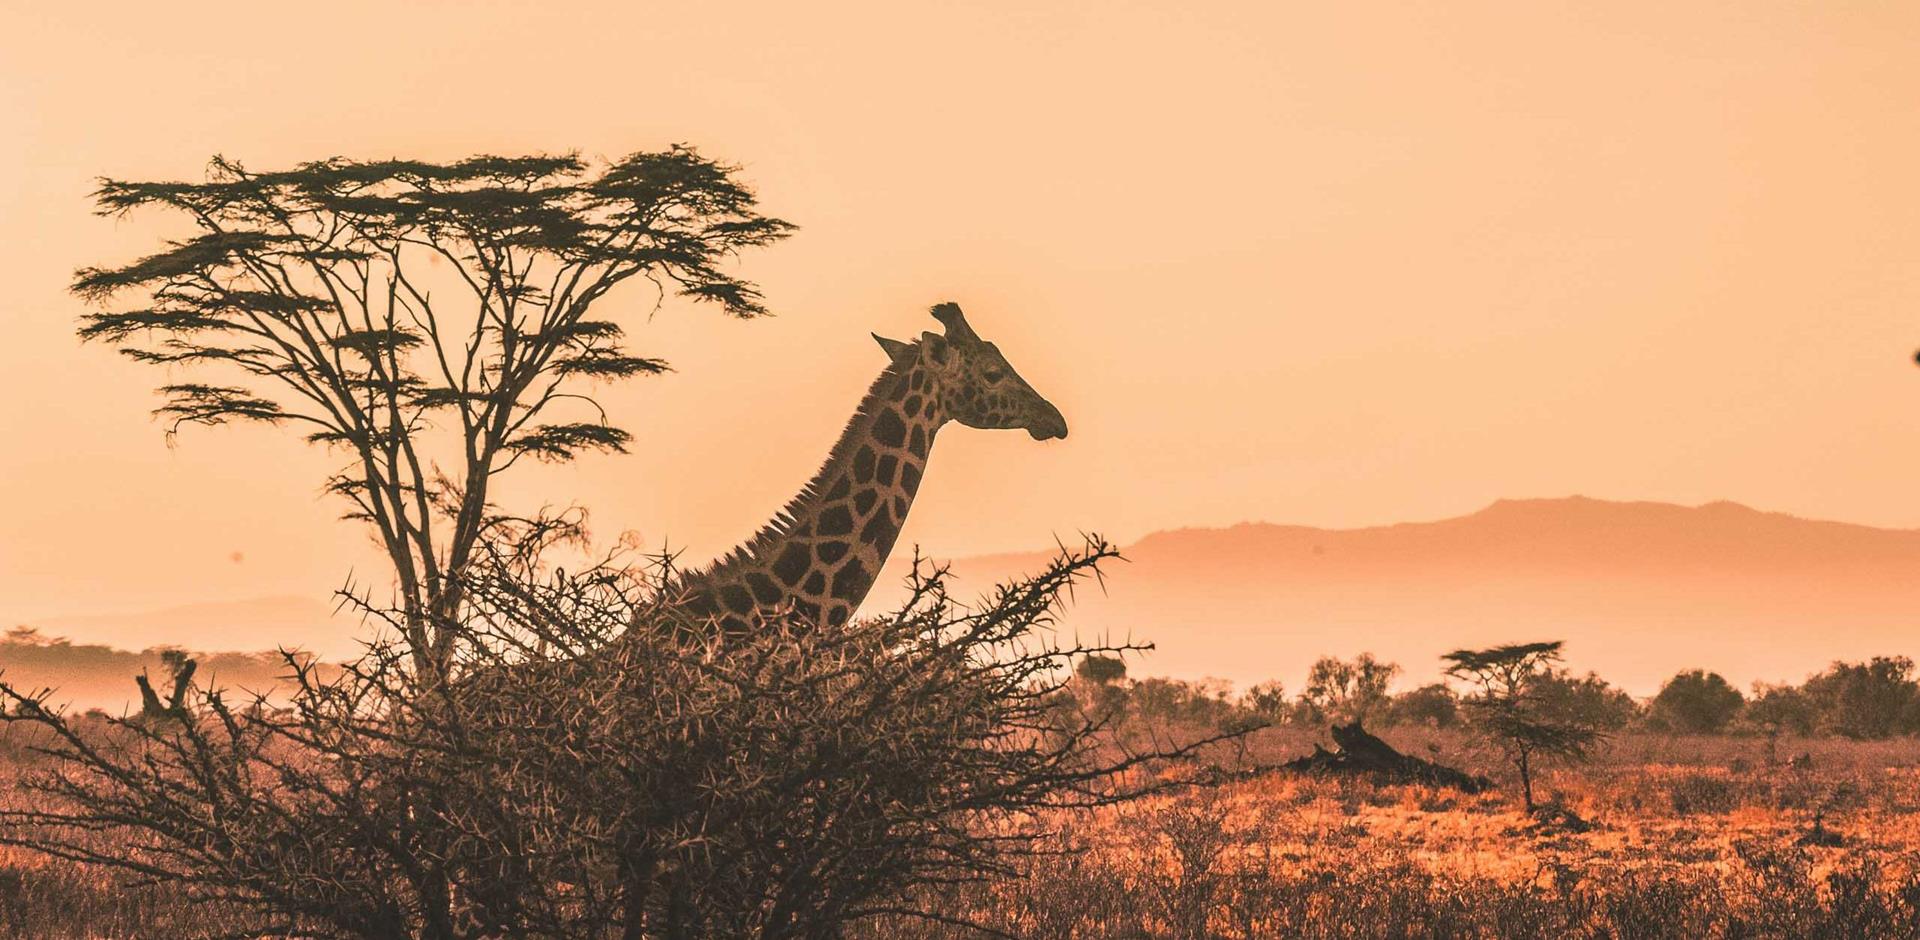 Giraffe, Africa